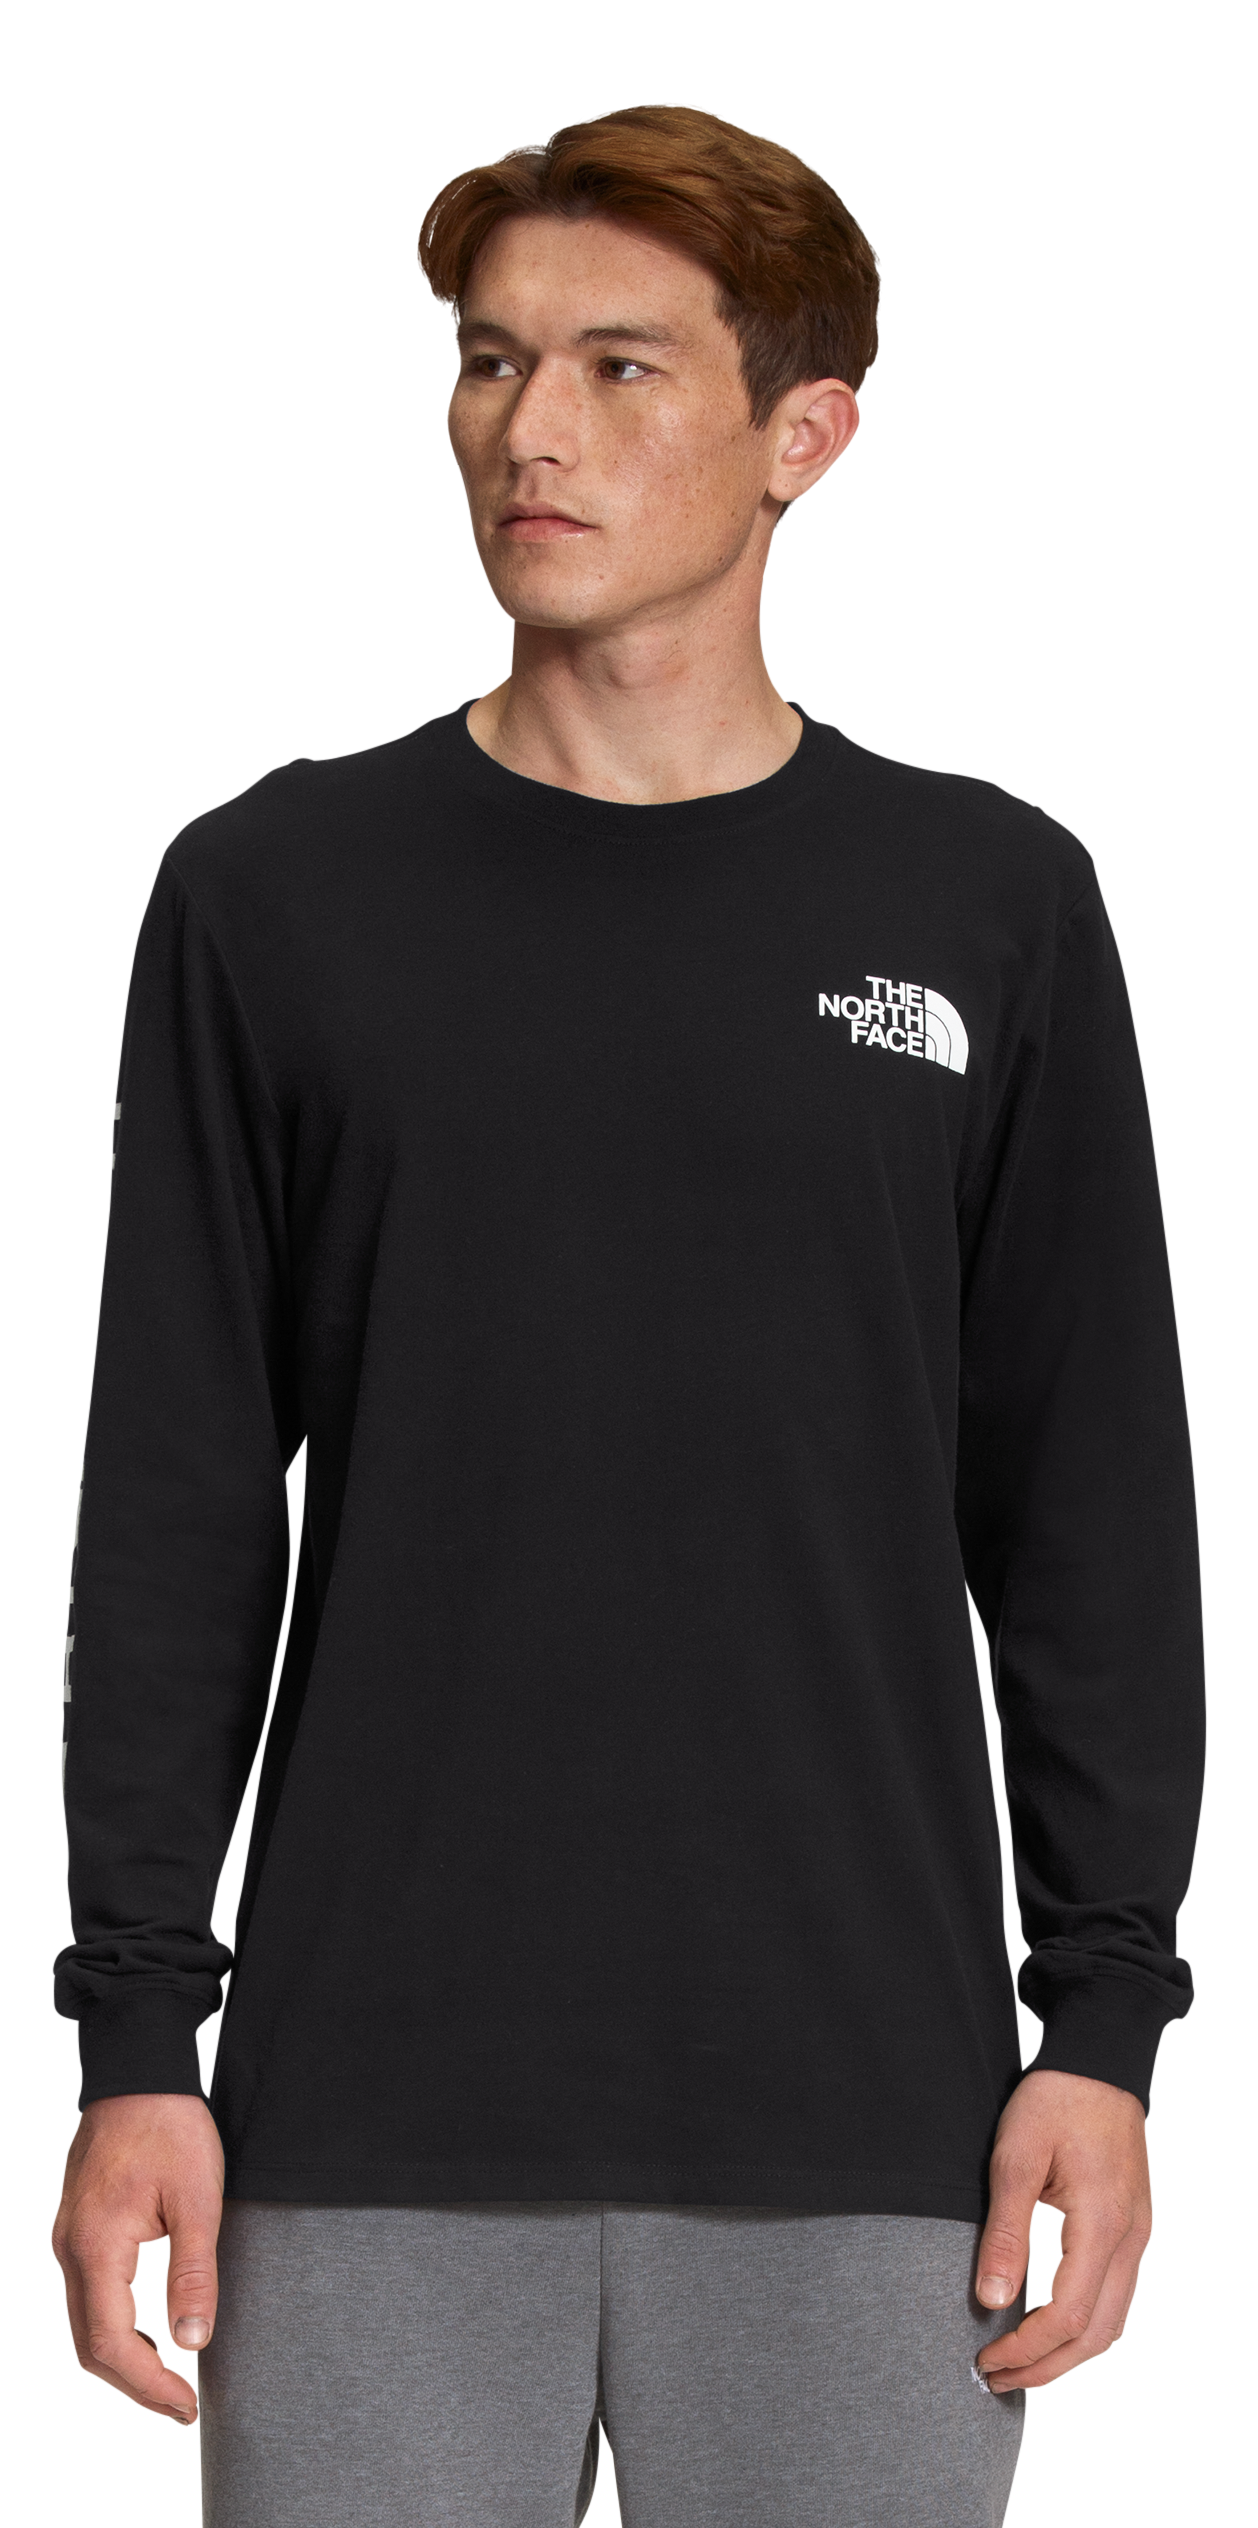 The North Face TNF Sleeve Hit Long-Sleeve T-Shirt for Men - TNF Black/TNF White - 2XL